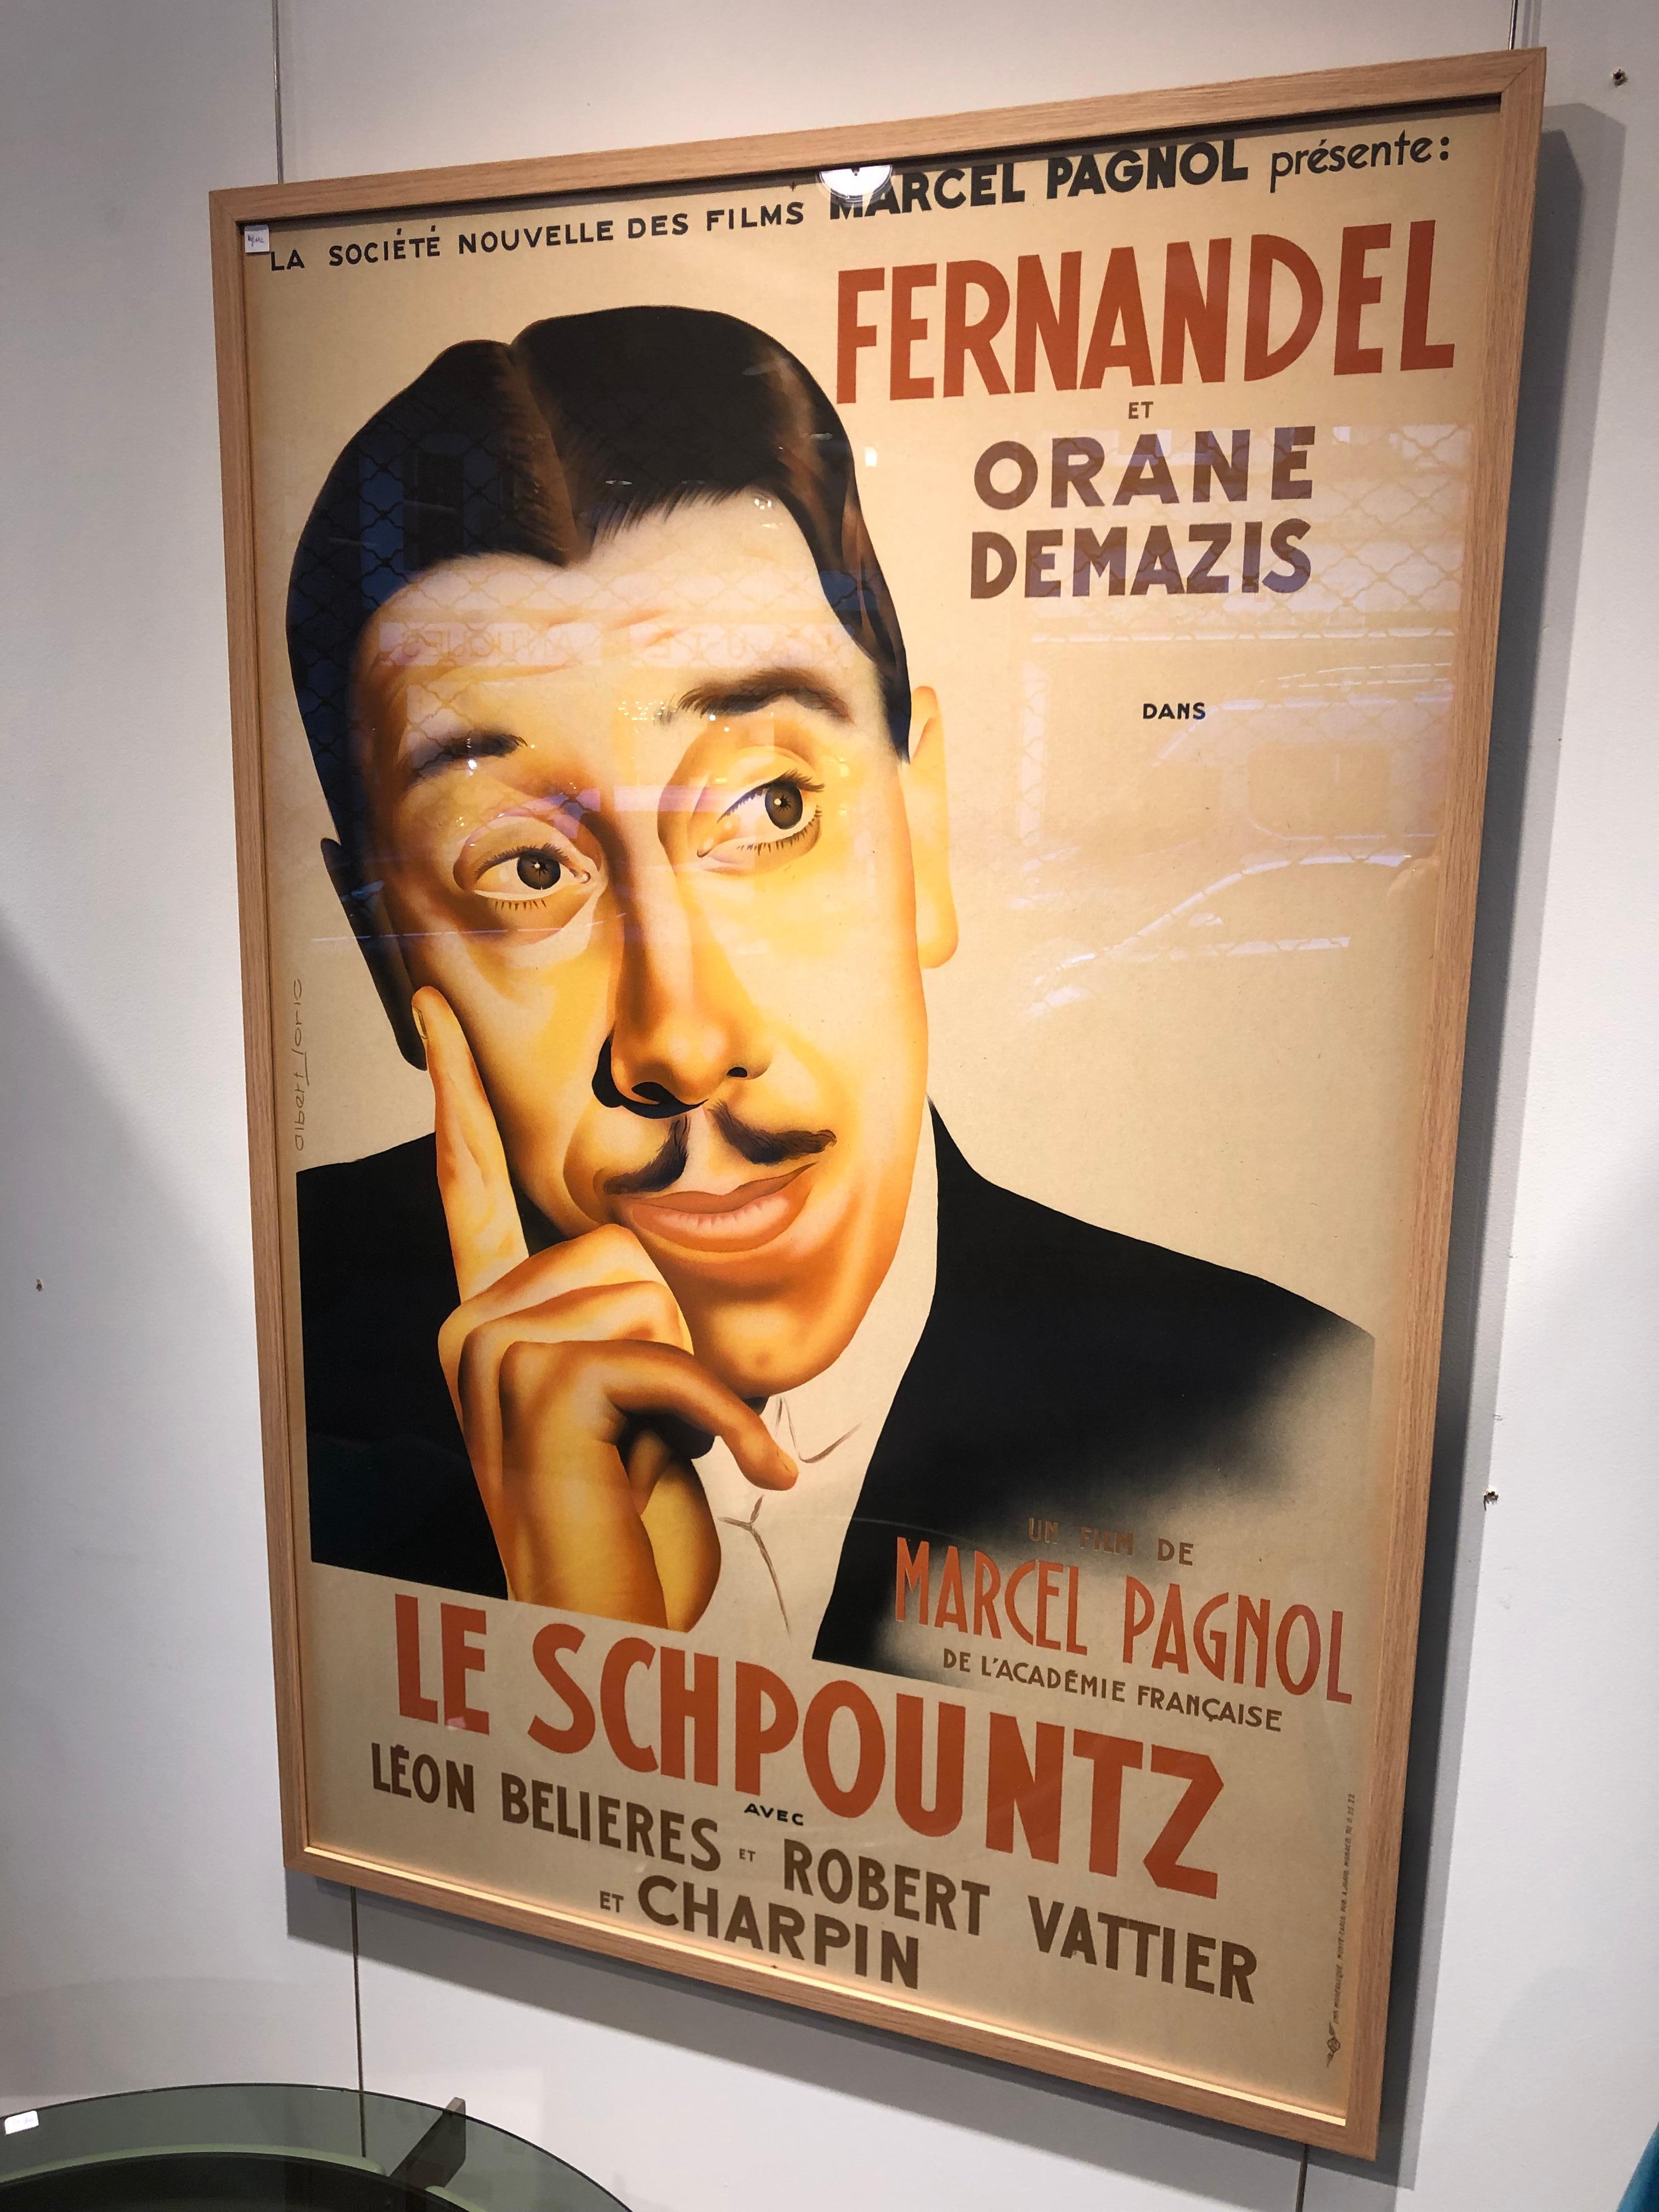 Paper Art Deco French Film Poster “le schpountz” de M.Pagnol For Sale